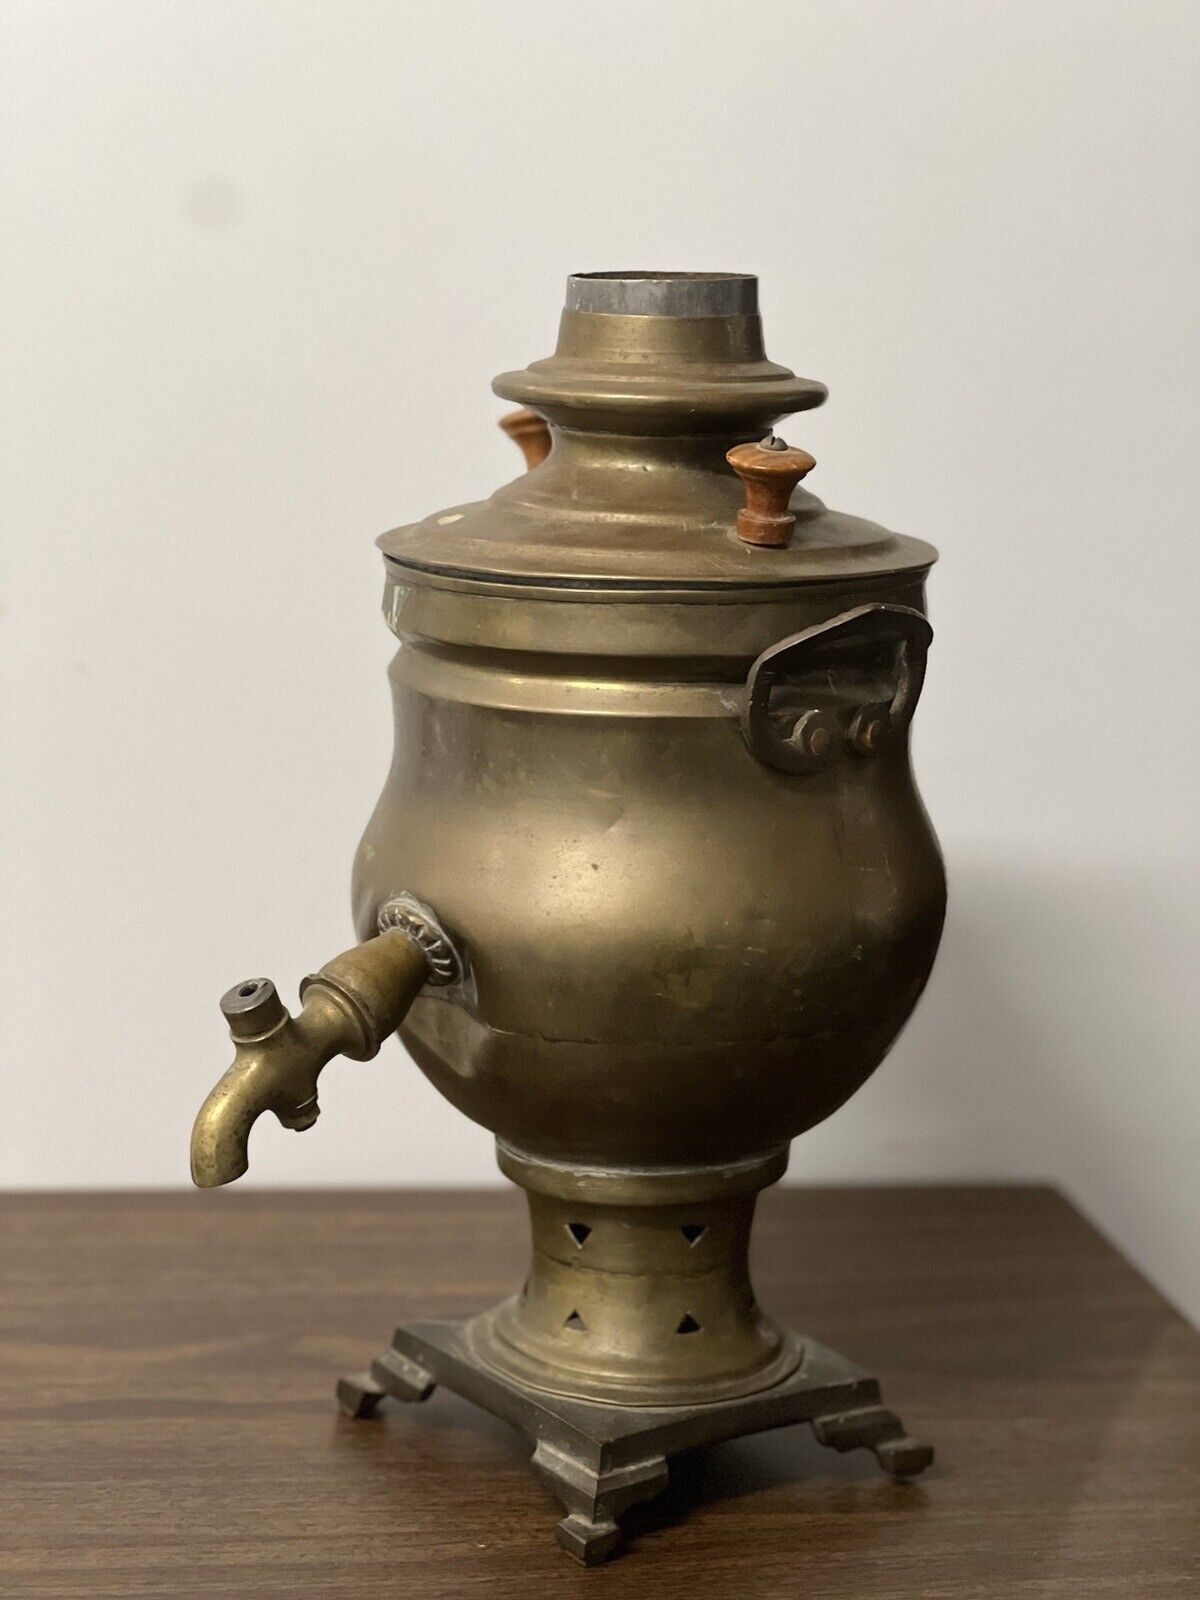 Vintage Antique Middle East Turkish Brass Samovar Hot Water Pot Kettle